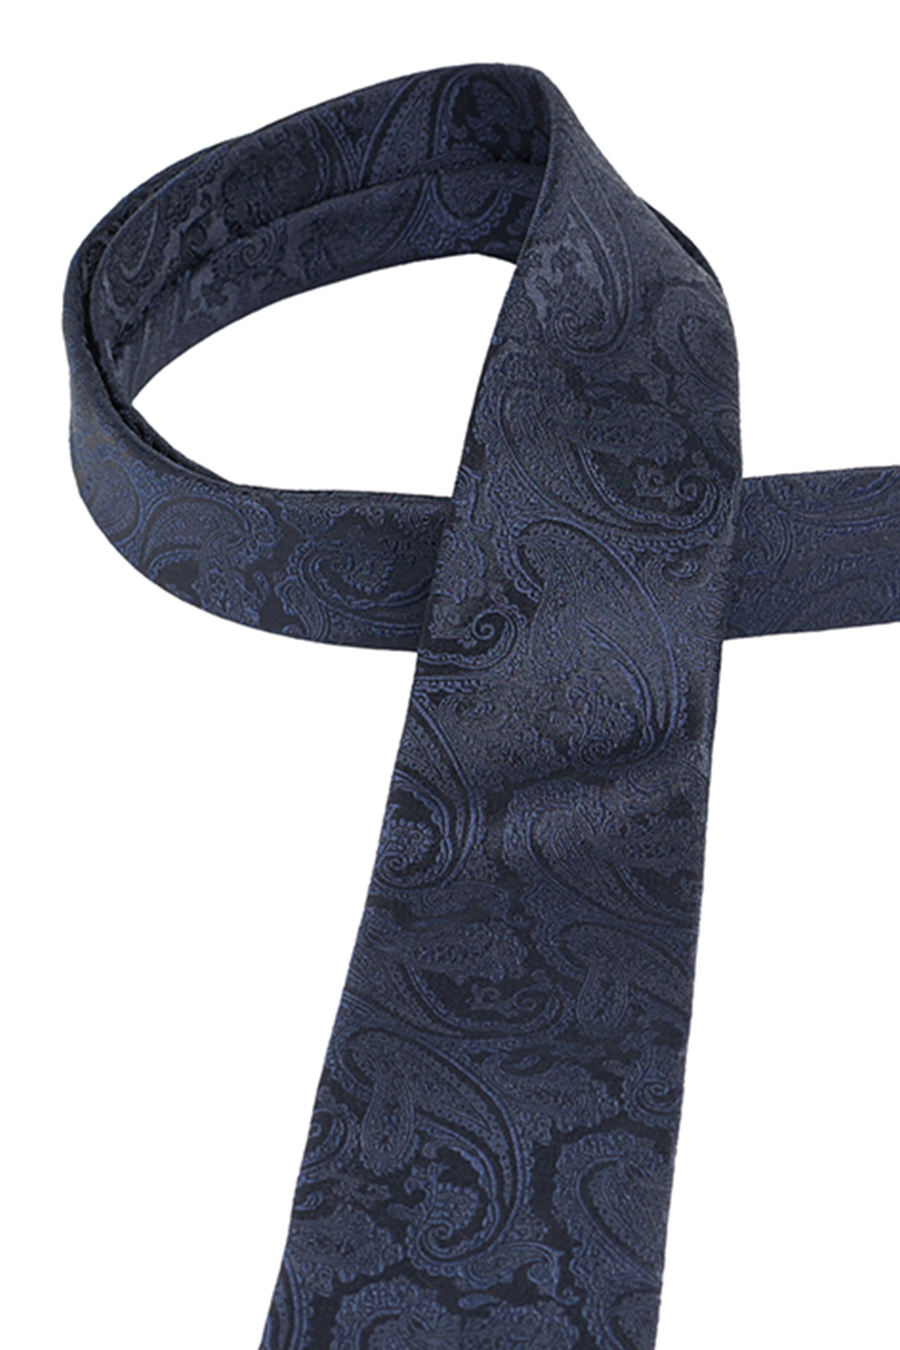 ETERNA 1863 Krawatte aus reiner Seide 7,5 cm breit navy